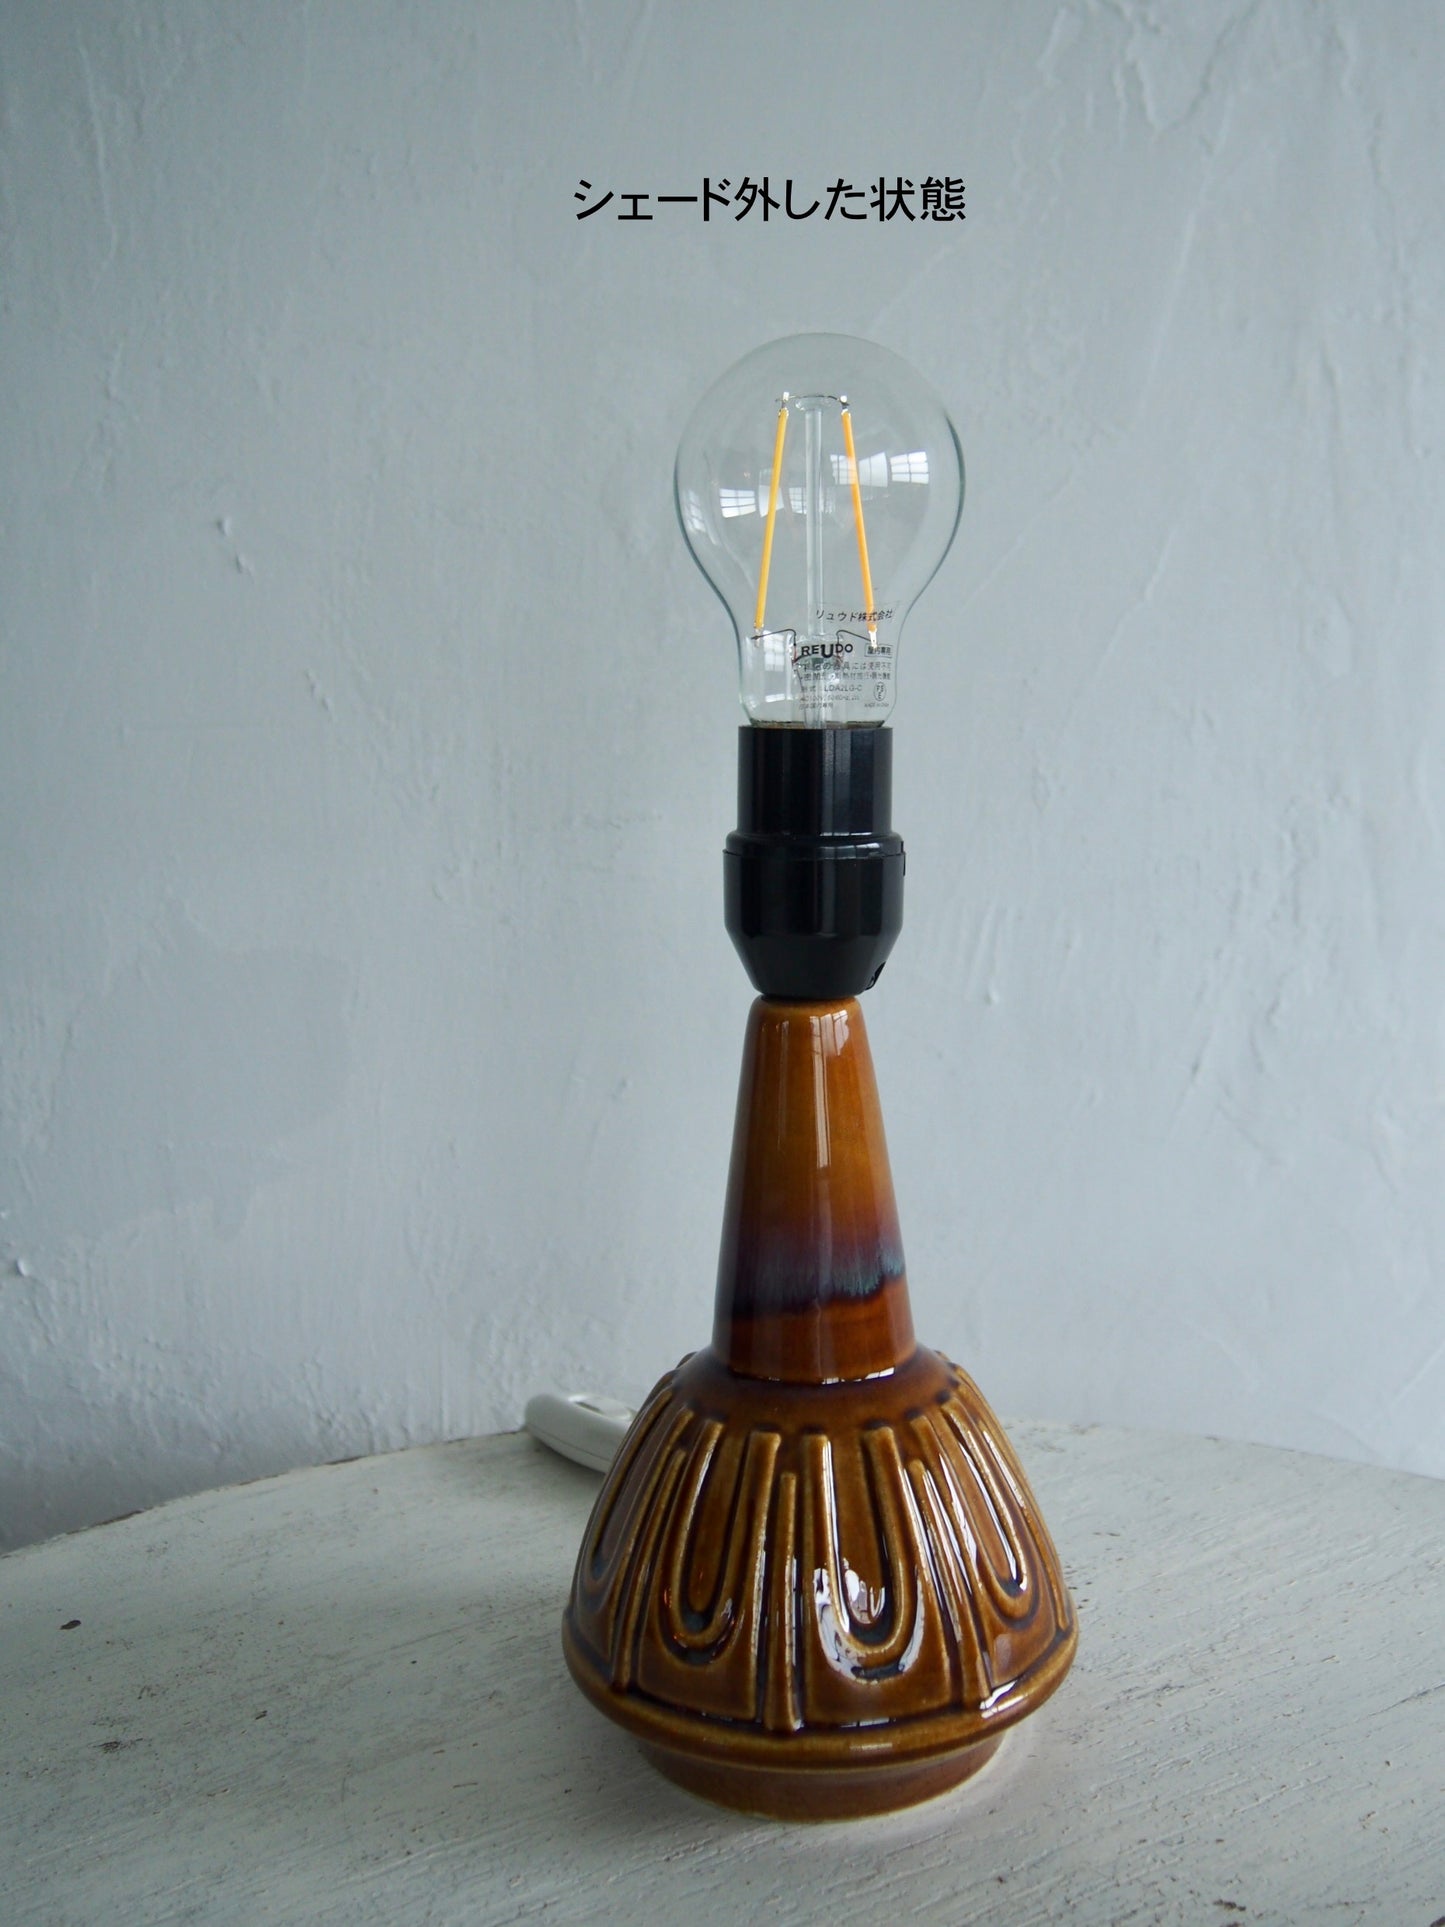 Vintage - Denmark - Vintage Table Lamp from SØHOLM